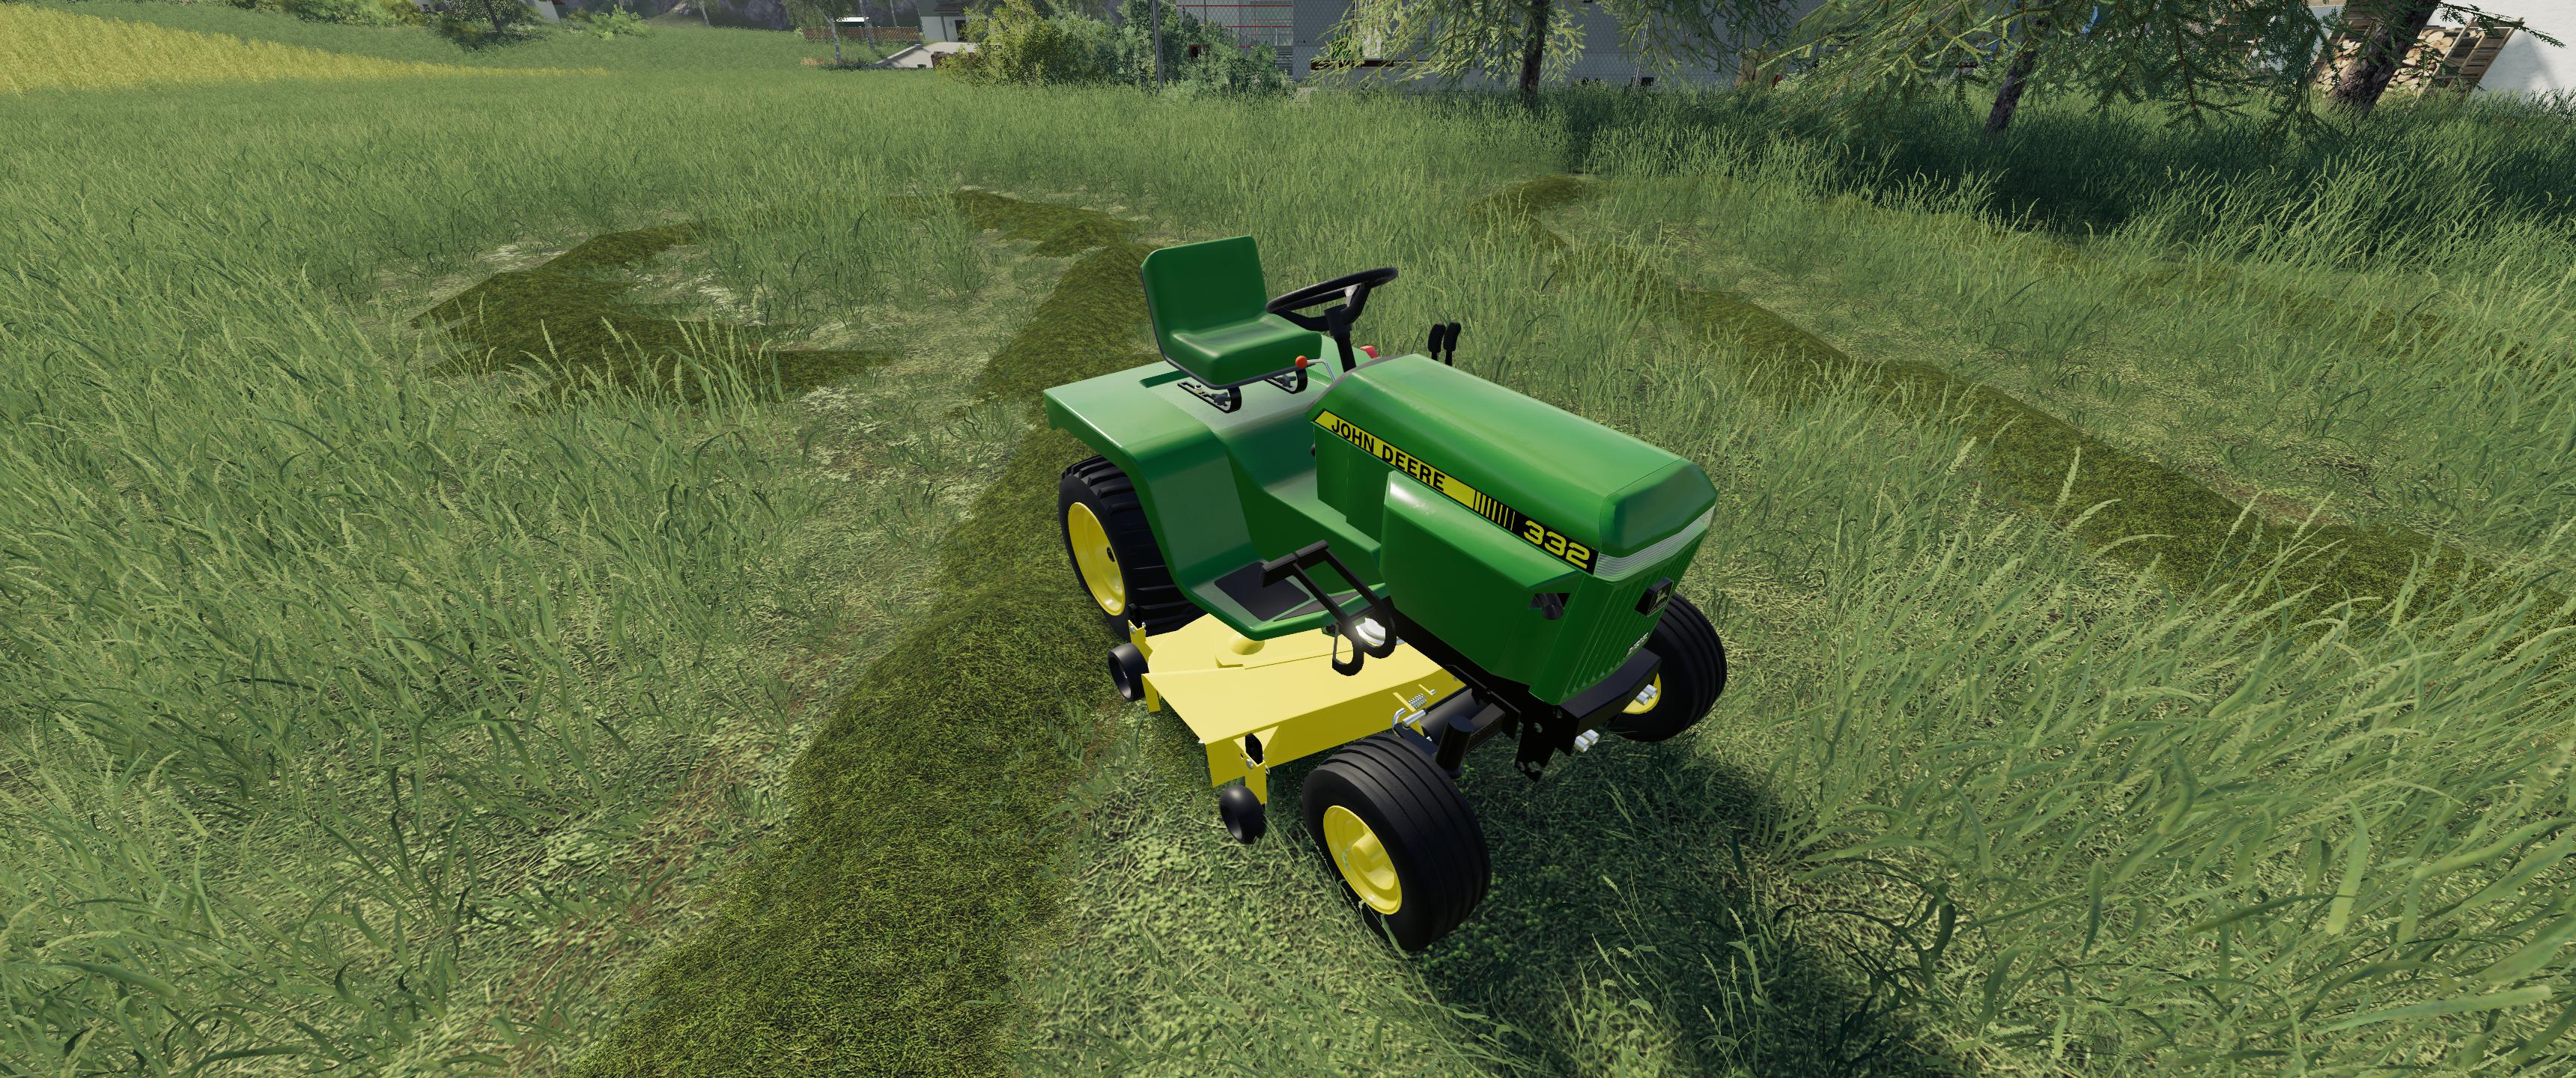 farming simulator 19 old john deere tractors